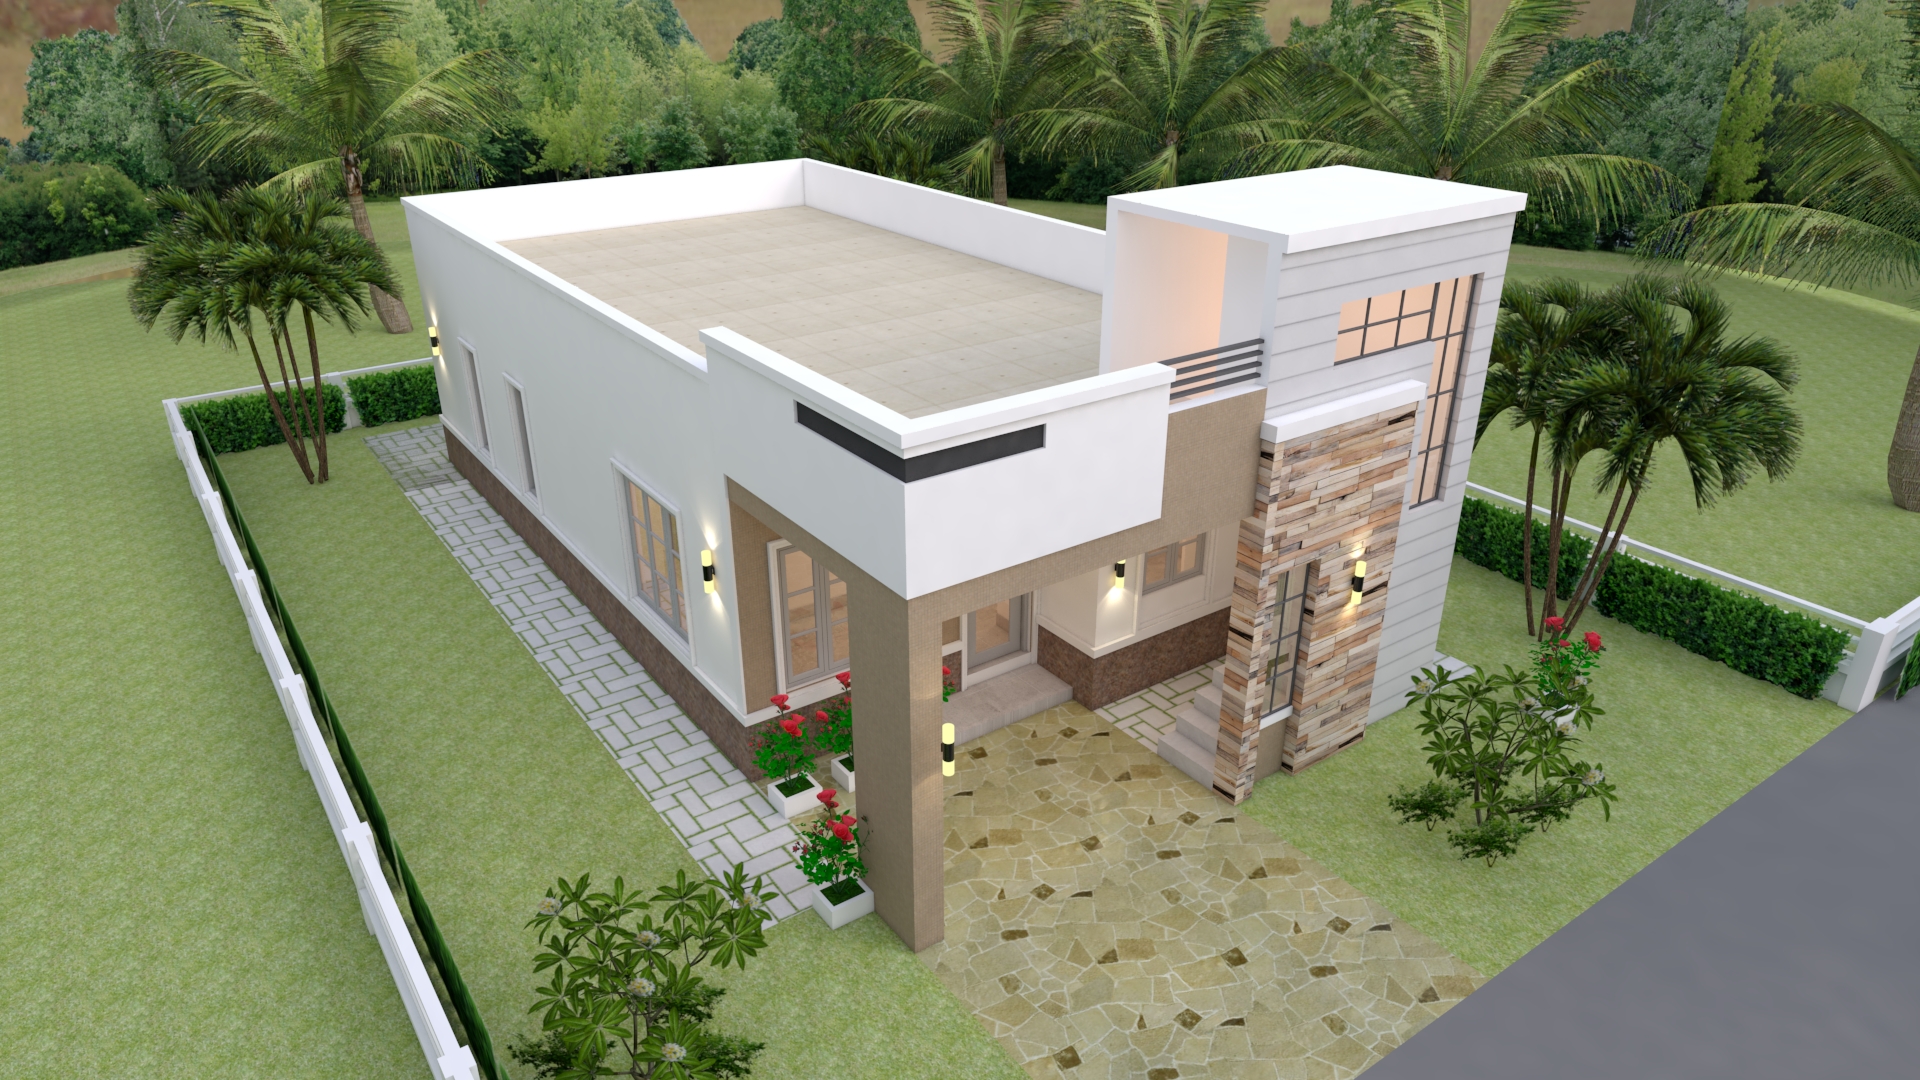 House Design 3d 7x14 Meter 23x46 3 Bedrooms Terrace Roof